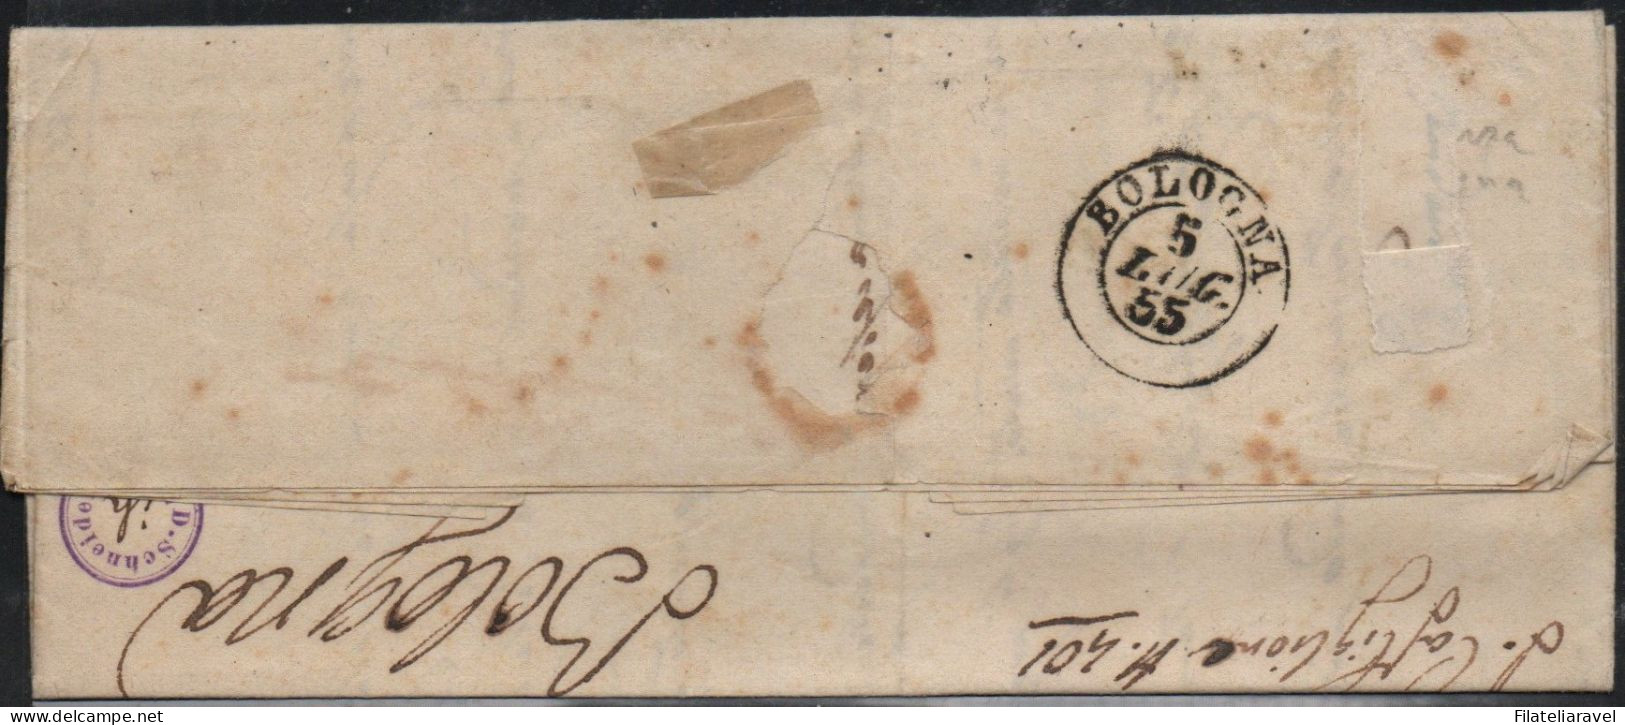 ASI -1857 - STATO PONTIFICIO - Lettera Completa Di Testo Partita Da Fulignano Il 4 Luglio 1855 E Diretta A Bologna - Papal States